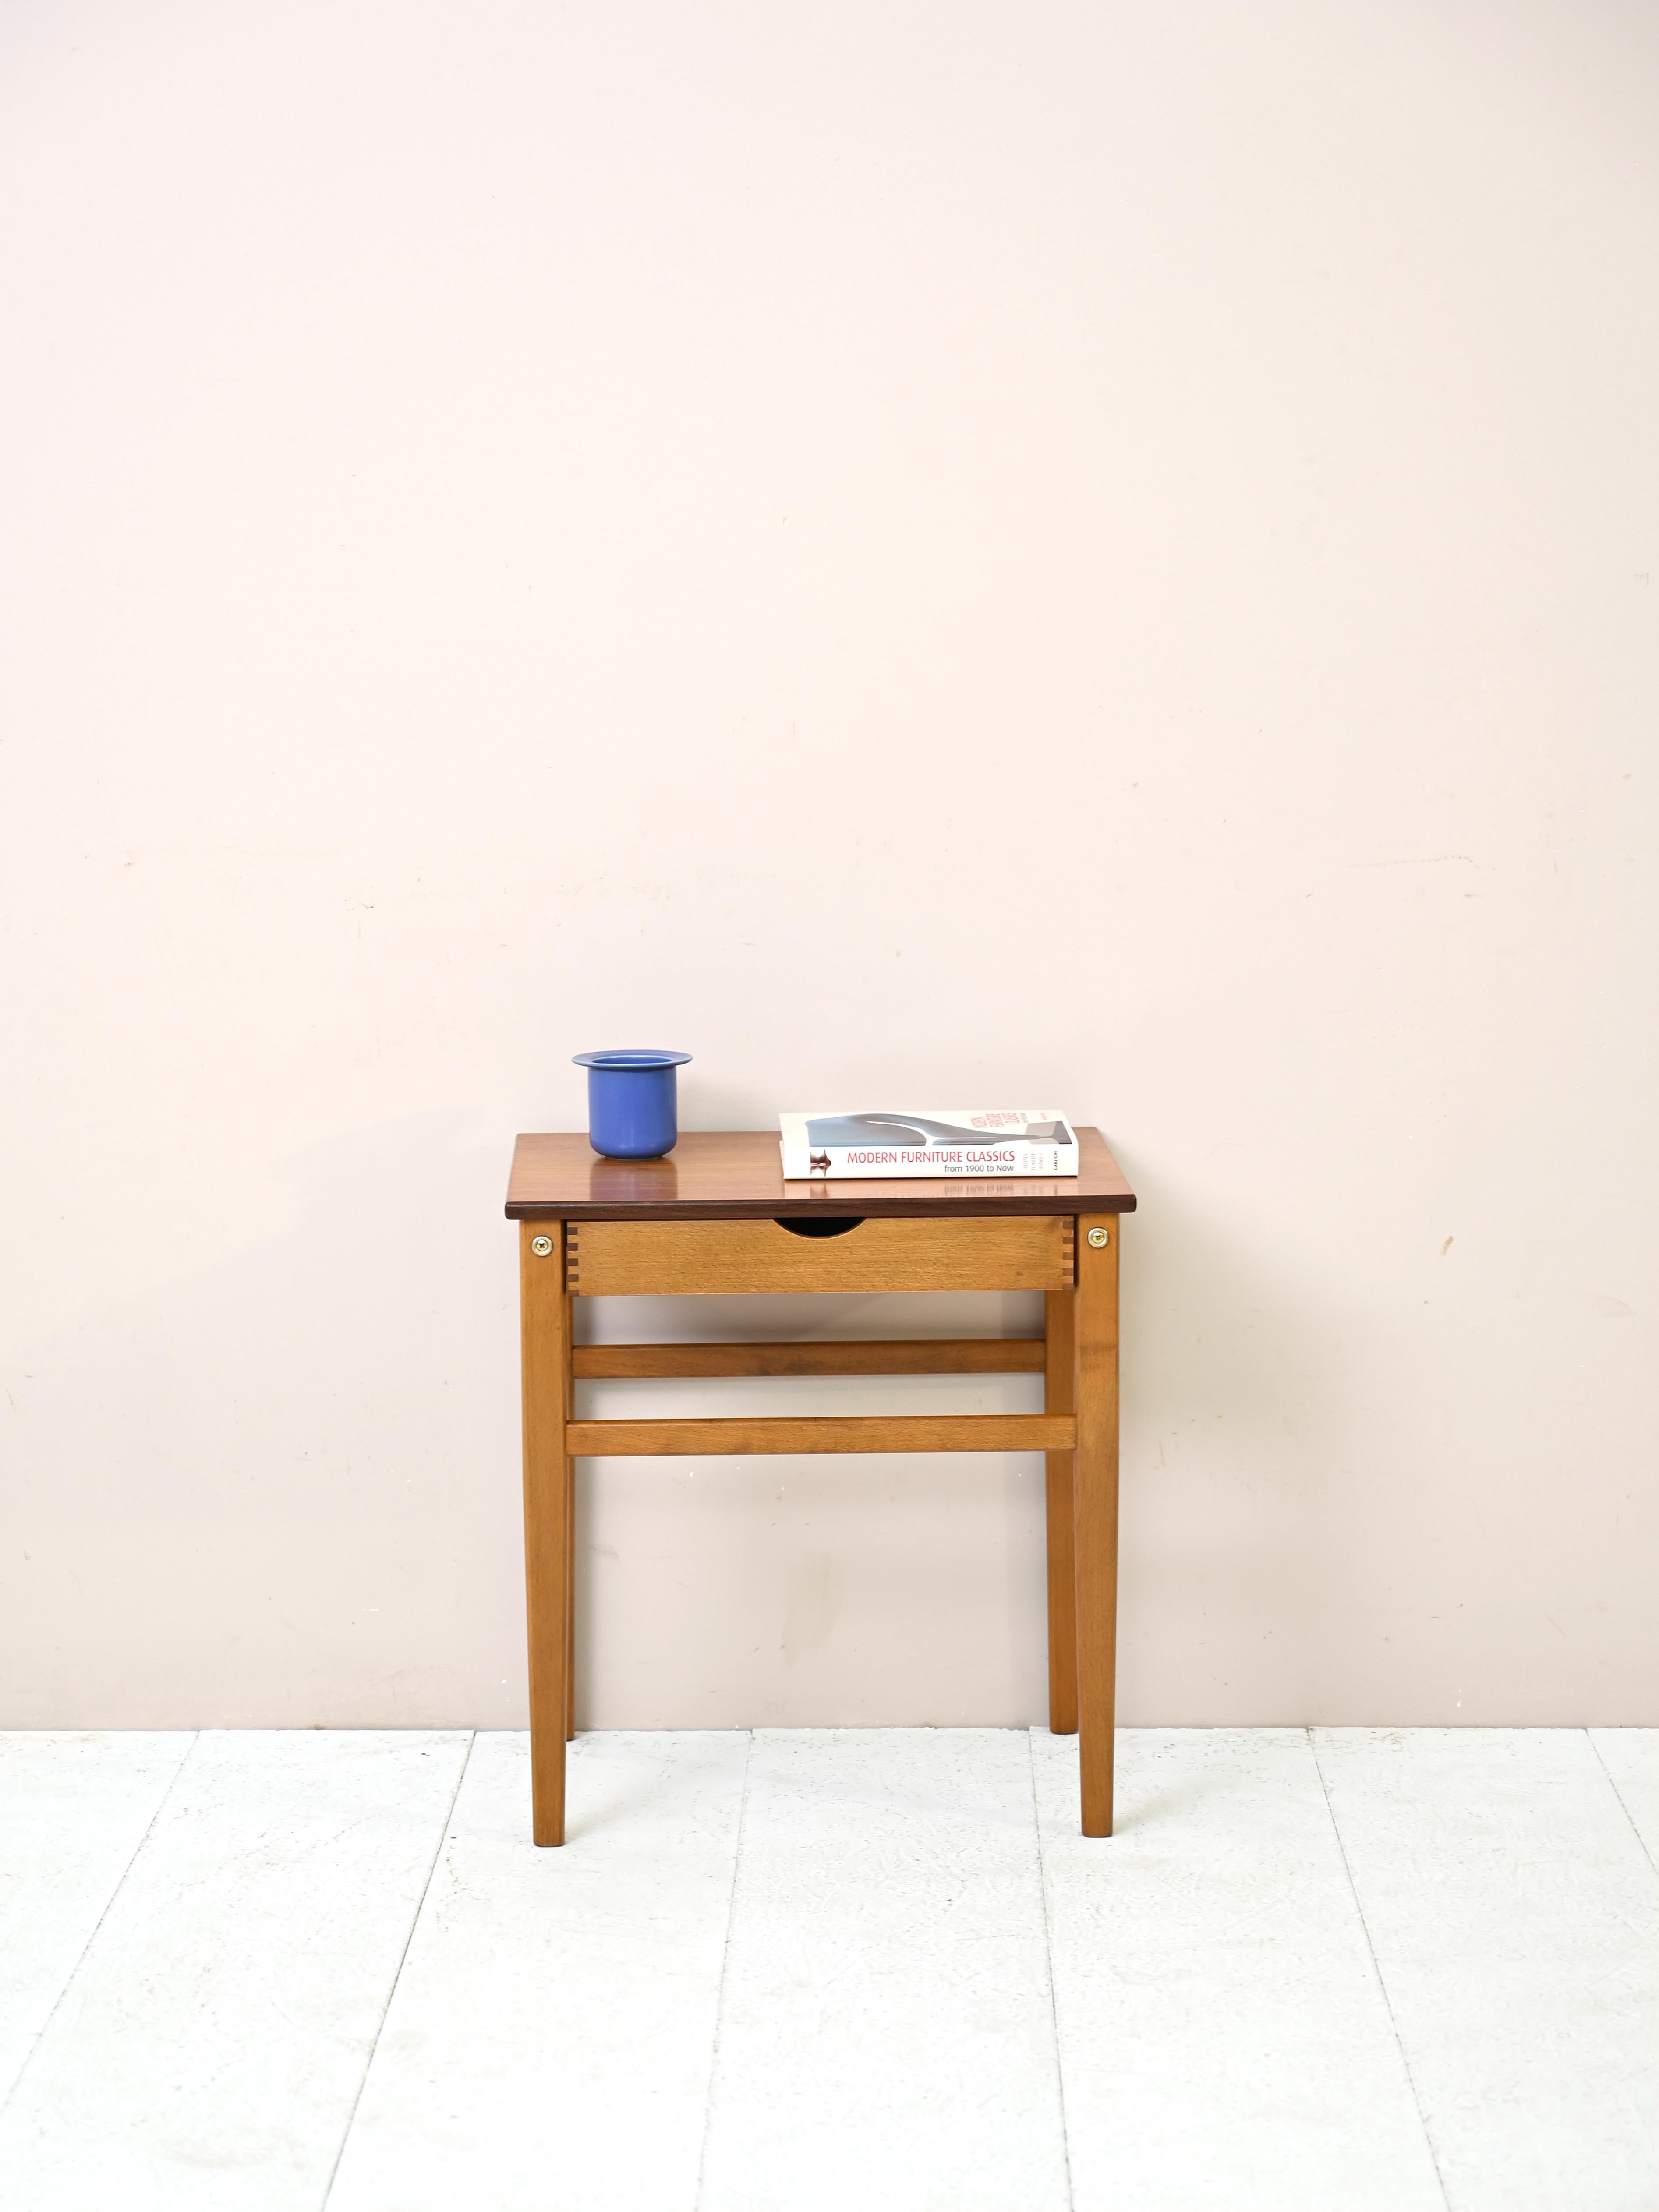 Skandinavisches Möbel aus den 1960er Jahren mit der Doppelfunktion eines Beistelltischs und eines Nachttischs.

Die Besonderheit, die dieses Stück auszeichnet, ist die beidseitige Lackierung. Die Schublade kann nämlich sowohl auf der rechten als